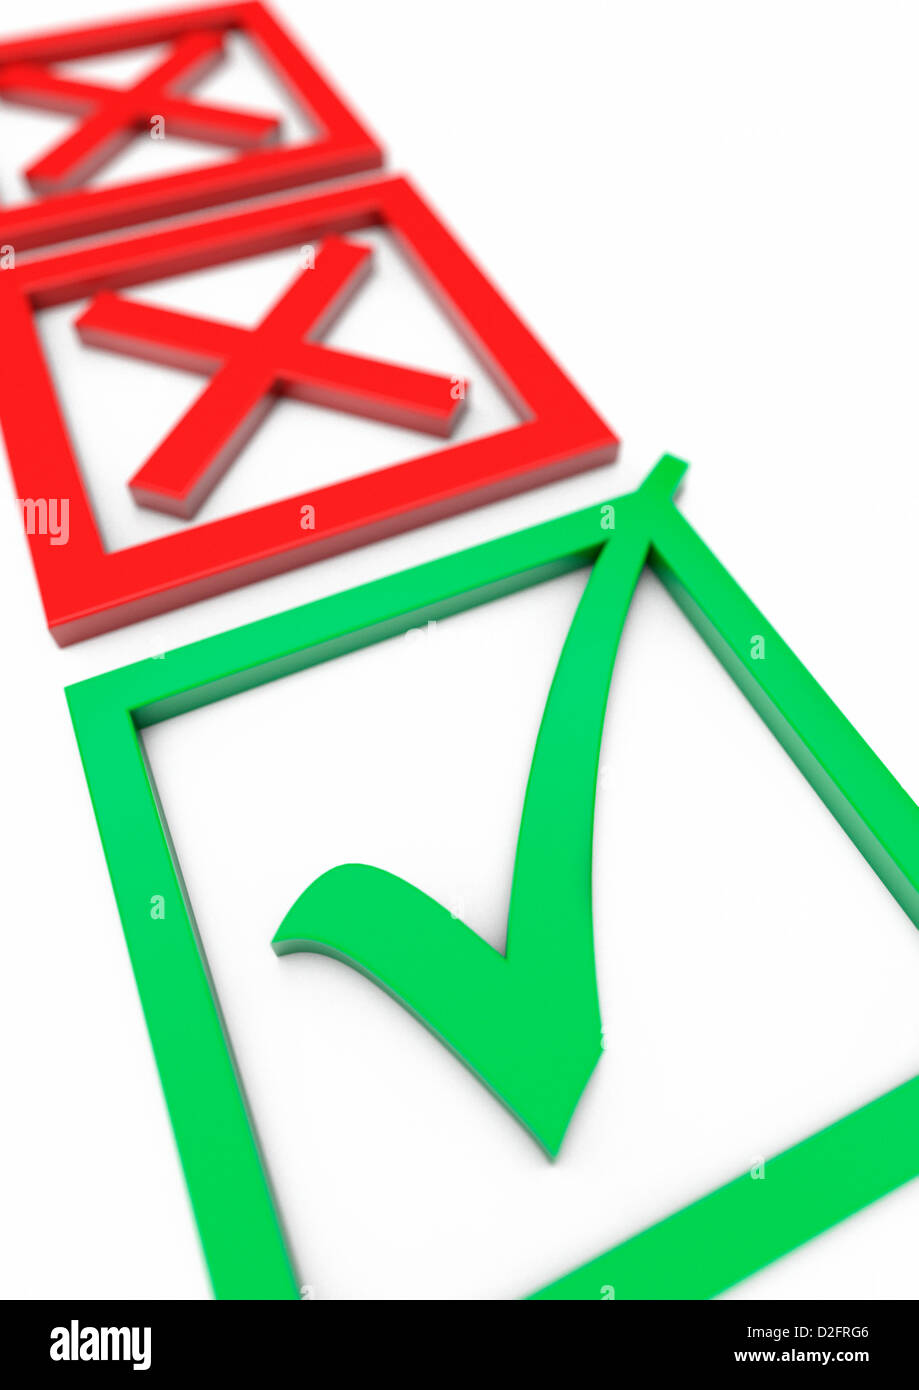 Abstimmung Schlupf oder Genehmigung Konzept mit zwei roten Kreuze in den Hintergrund und ein grünes Häkchen Häkchen im Vordergrund. Stockfoto